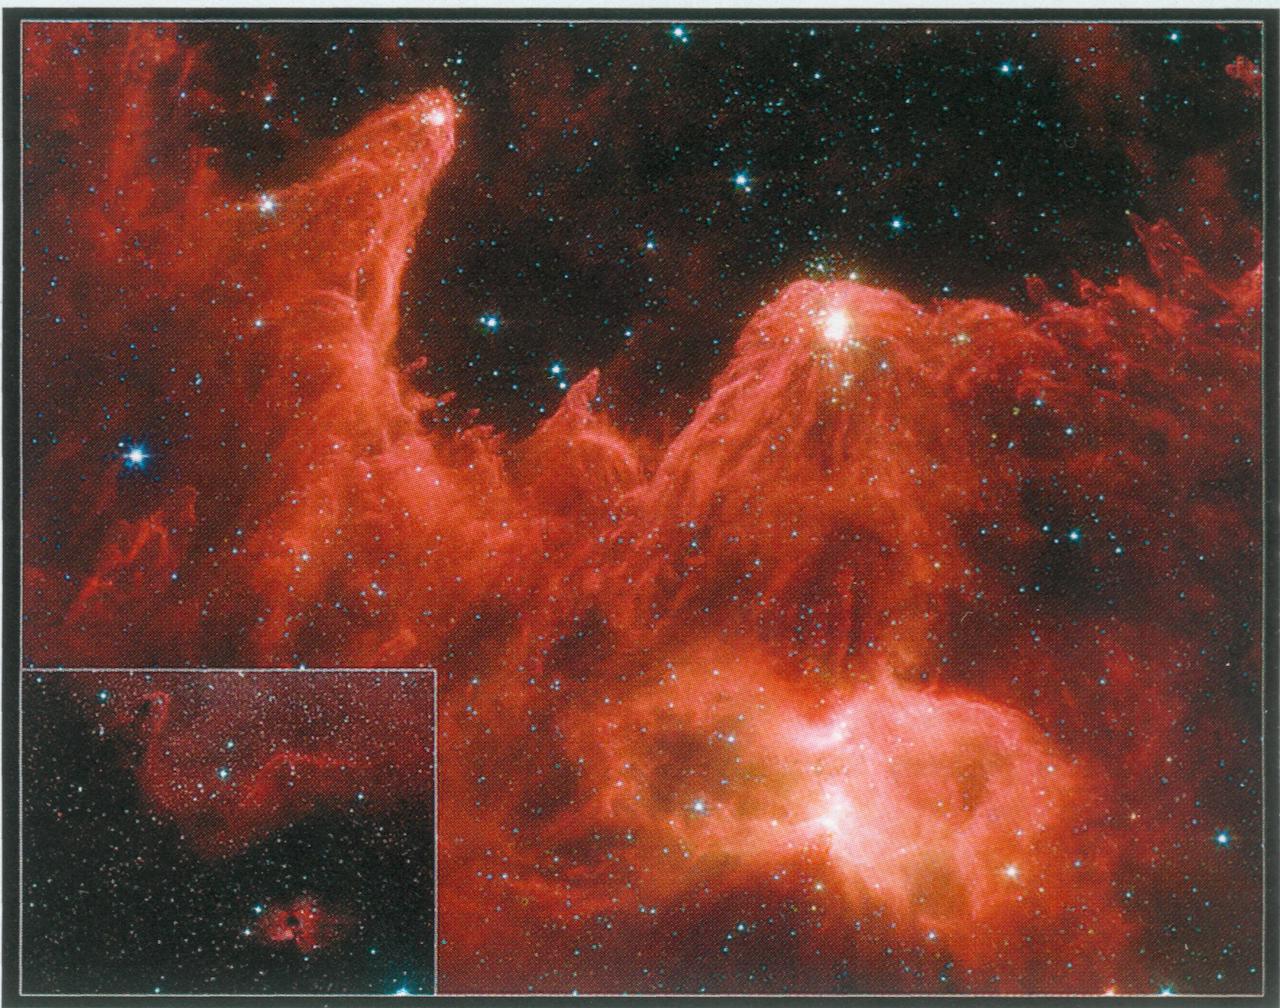 Столпы Творения. Созвездие Кассиопеи. Слева внизу - видимая часть спектра, крупным планом в центре инфракрасное изображение. Пылевые столбы вершинами повёрнуты к наиболее яркой и массивной звезде в данной области космоса. Столбы образовались под давлением звёздного ветра. В столбах имеется множество звёзд. Космический телескоп Спитцентр. НАСА, 2005 г. (Общественное достояние).